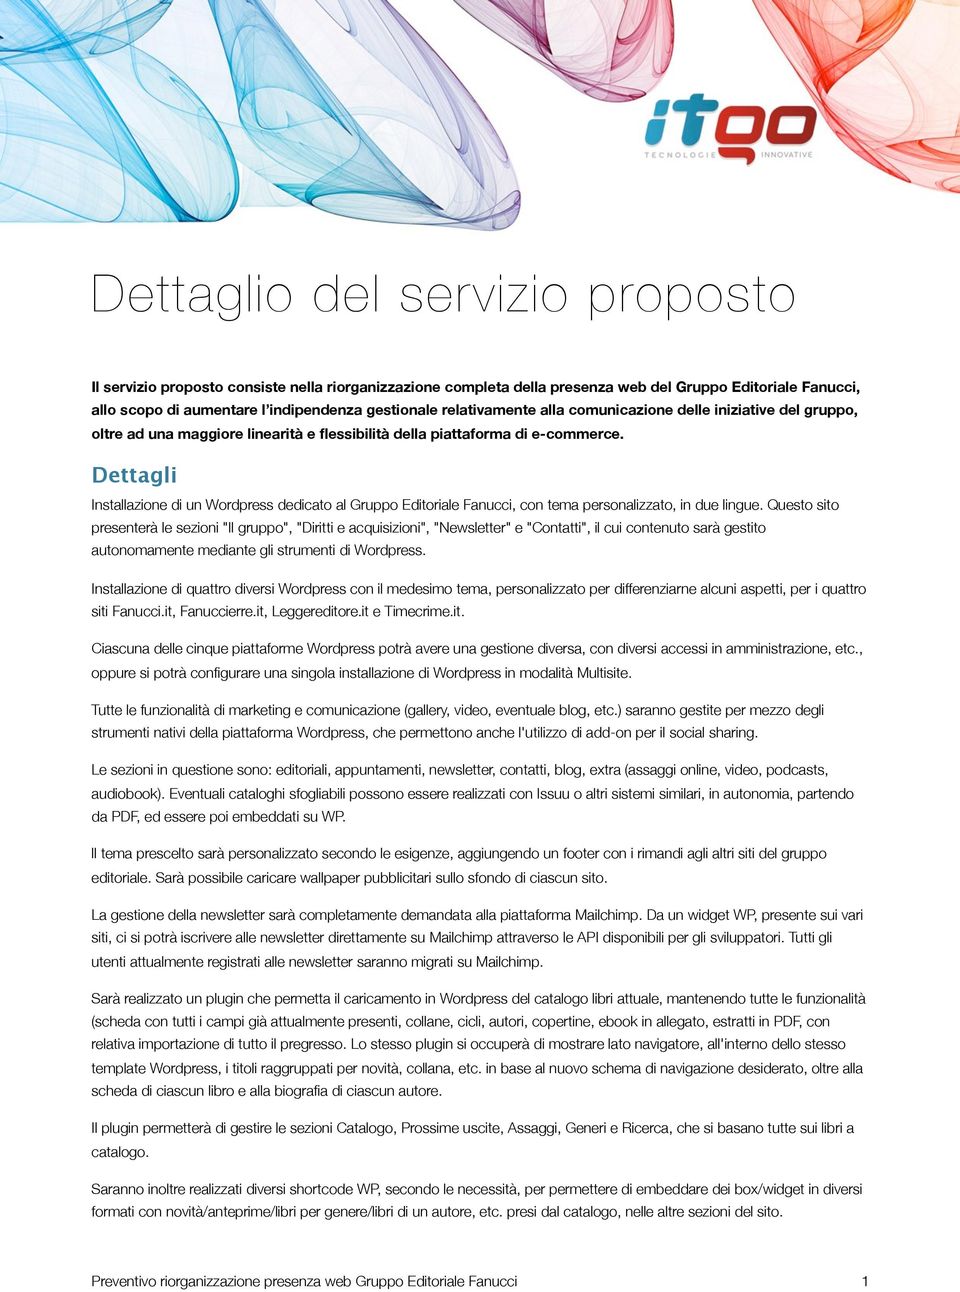 Dettagli Installazione di un Wordpress dedicato al Gruppo Editoriale Fanucci, con tema personalizzato, in due lingue.